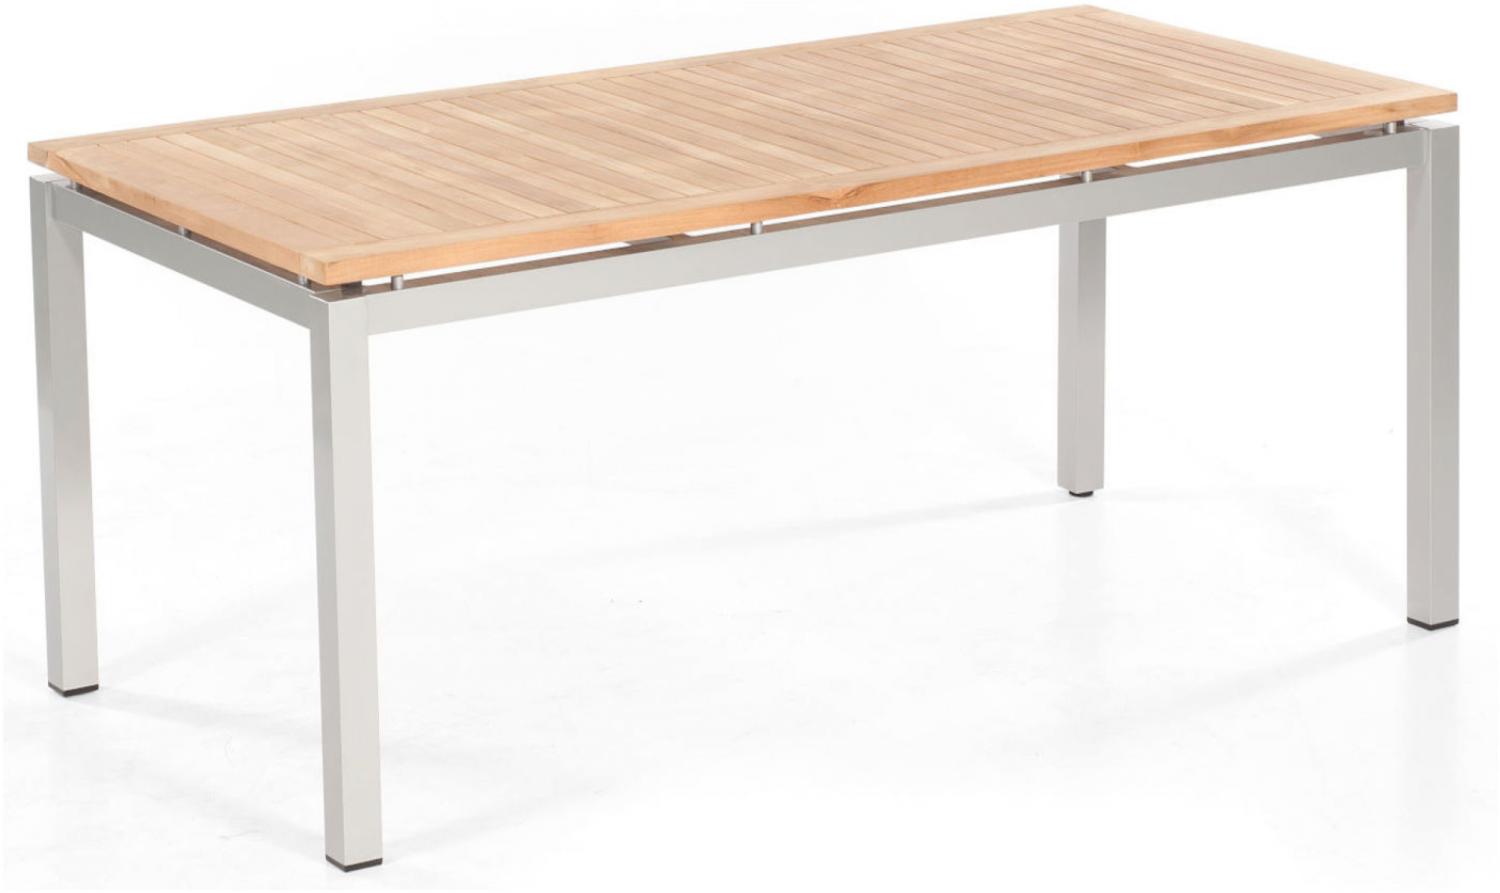 Sonnenpartner Gartentisch Base 160x90 cm Aluminium silber Tischsystem Tischplatte Compact HPL Shiplap-Pinie 80051001 Bild 1